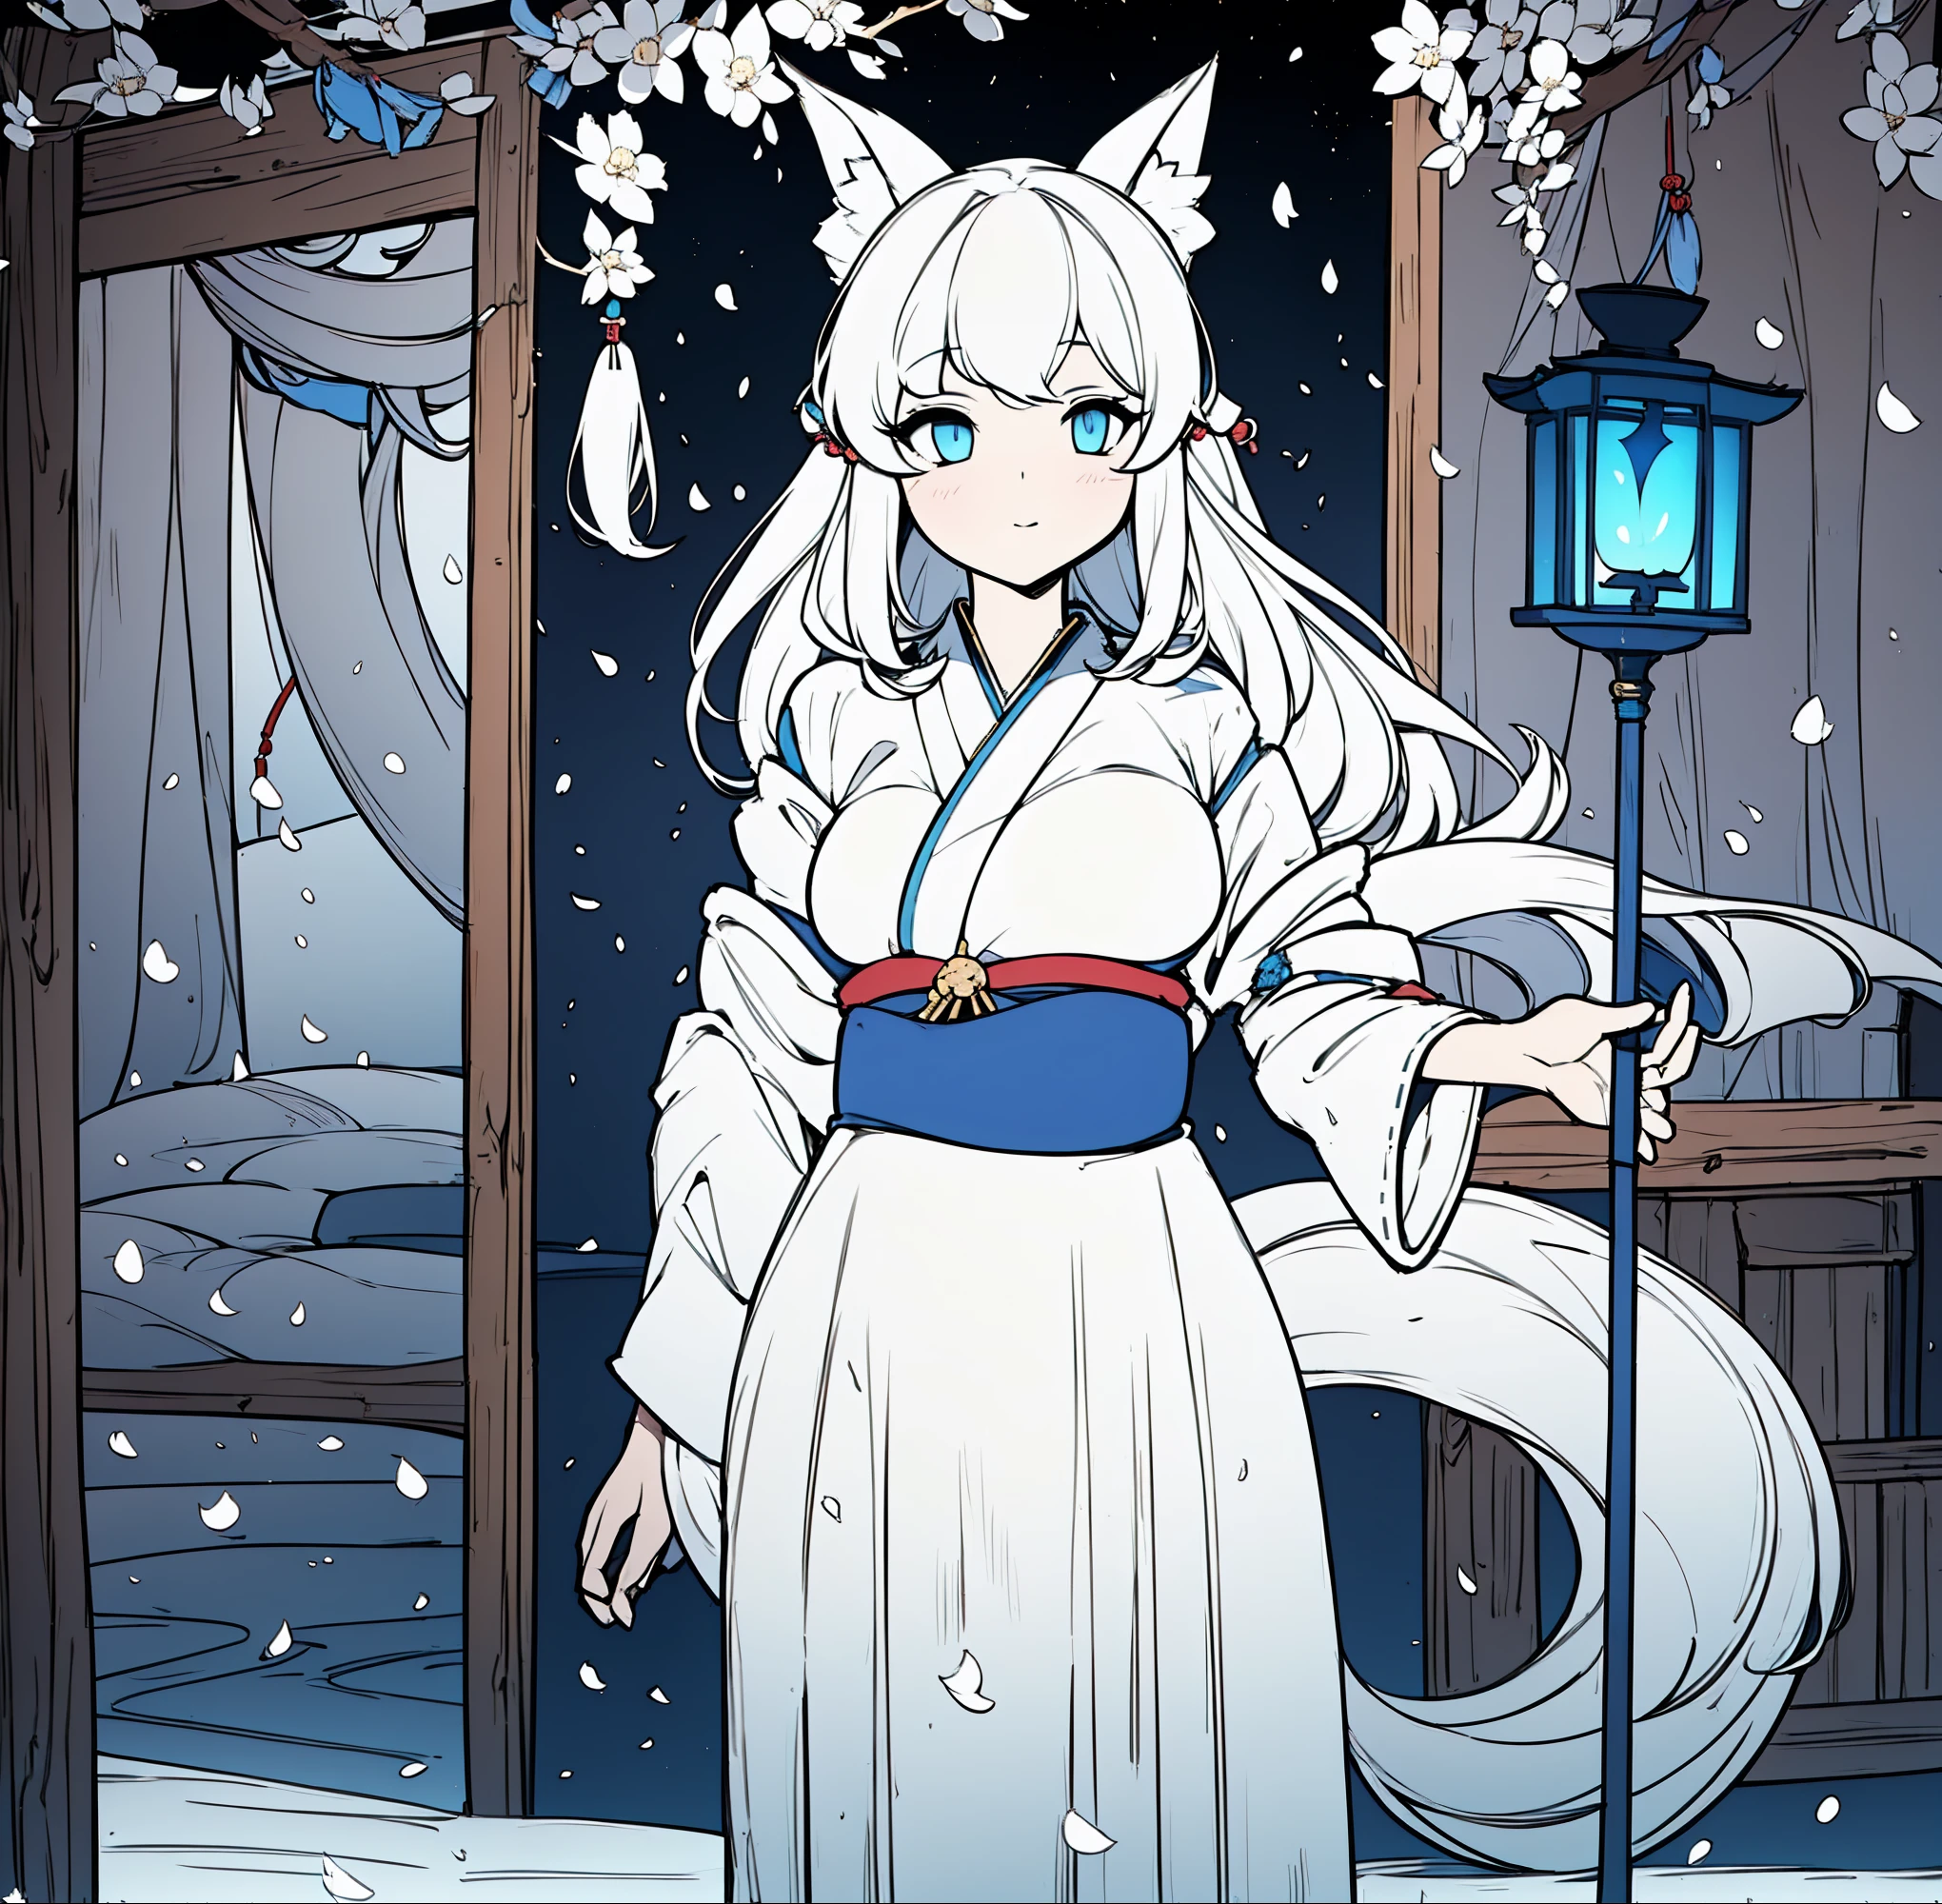 Chica kitsune de piel blanca, con disfraz de sacerdotisa azul y blanco, Sorteo simple, sin luces ni sombras, madura de 25 años buscando, sosteniendo un bastón de lámpara japonesa, 